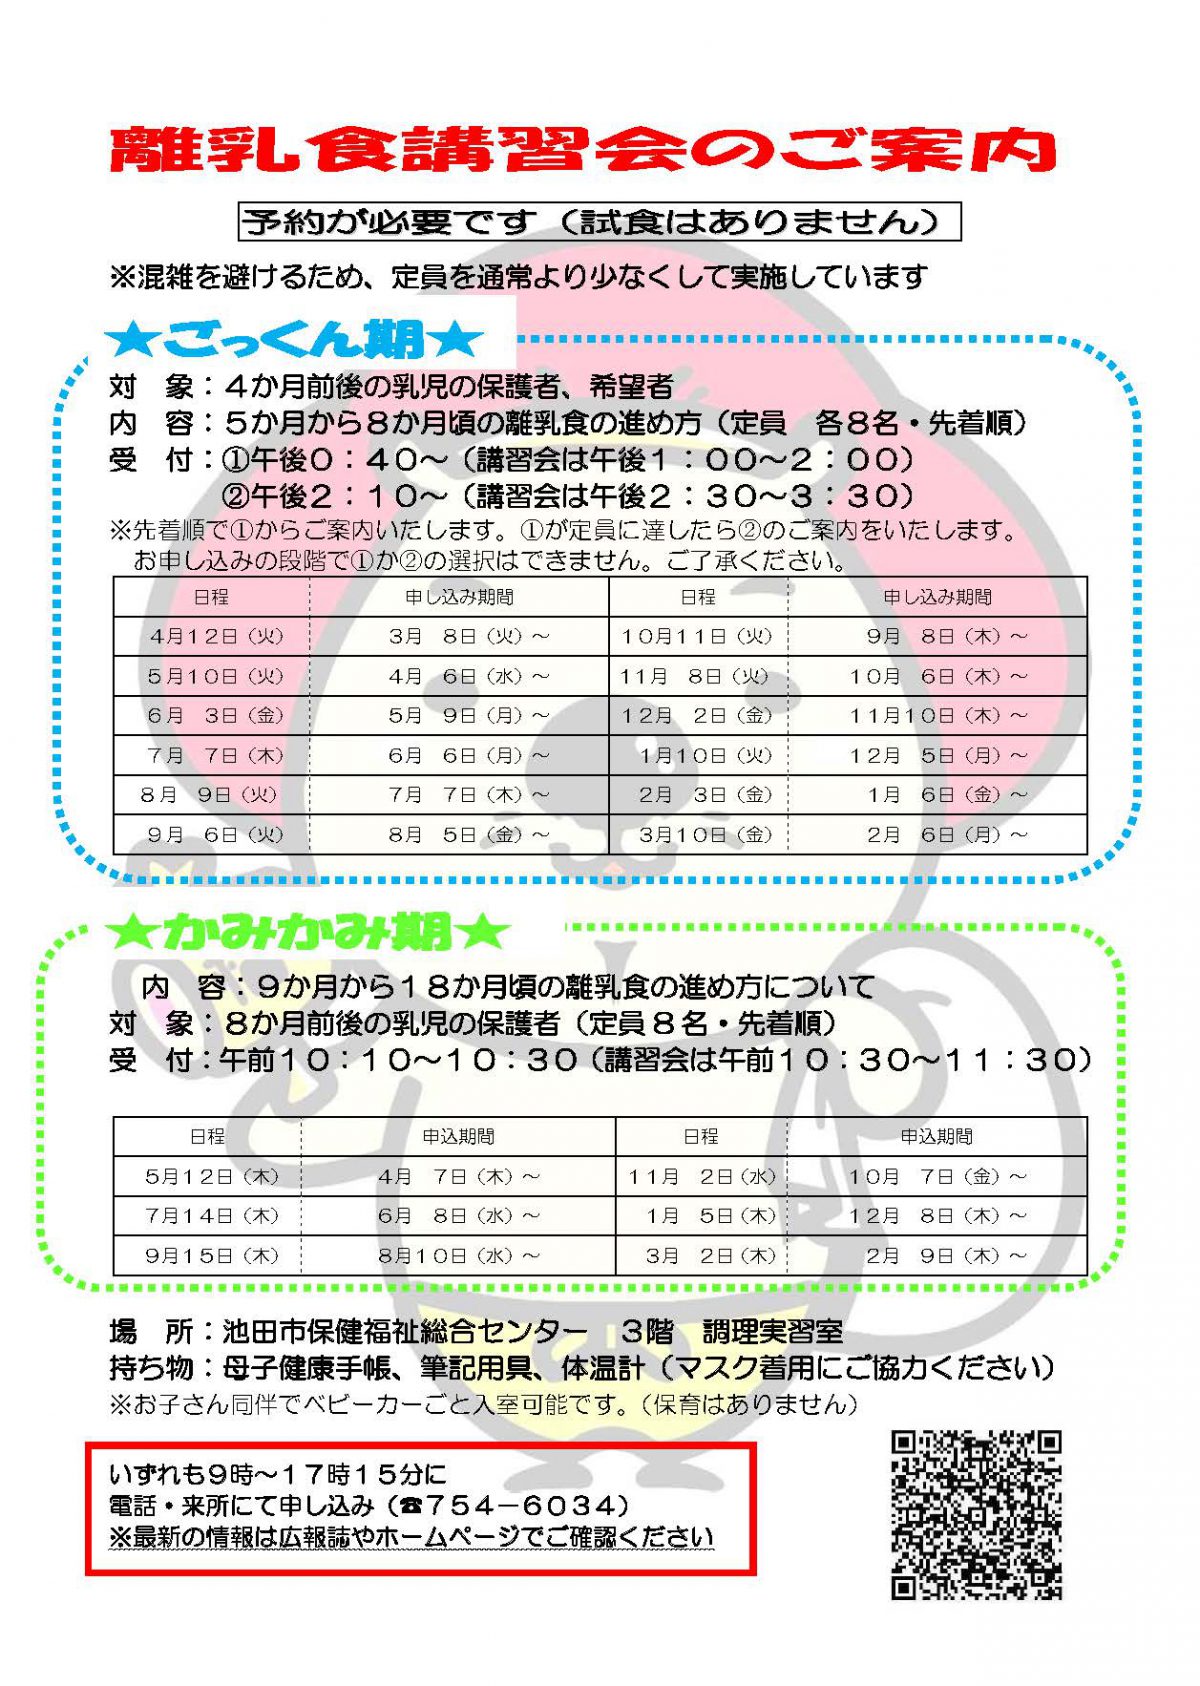 【予約制】離乳食講習会 3月10日開催ごっくん期